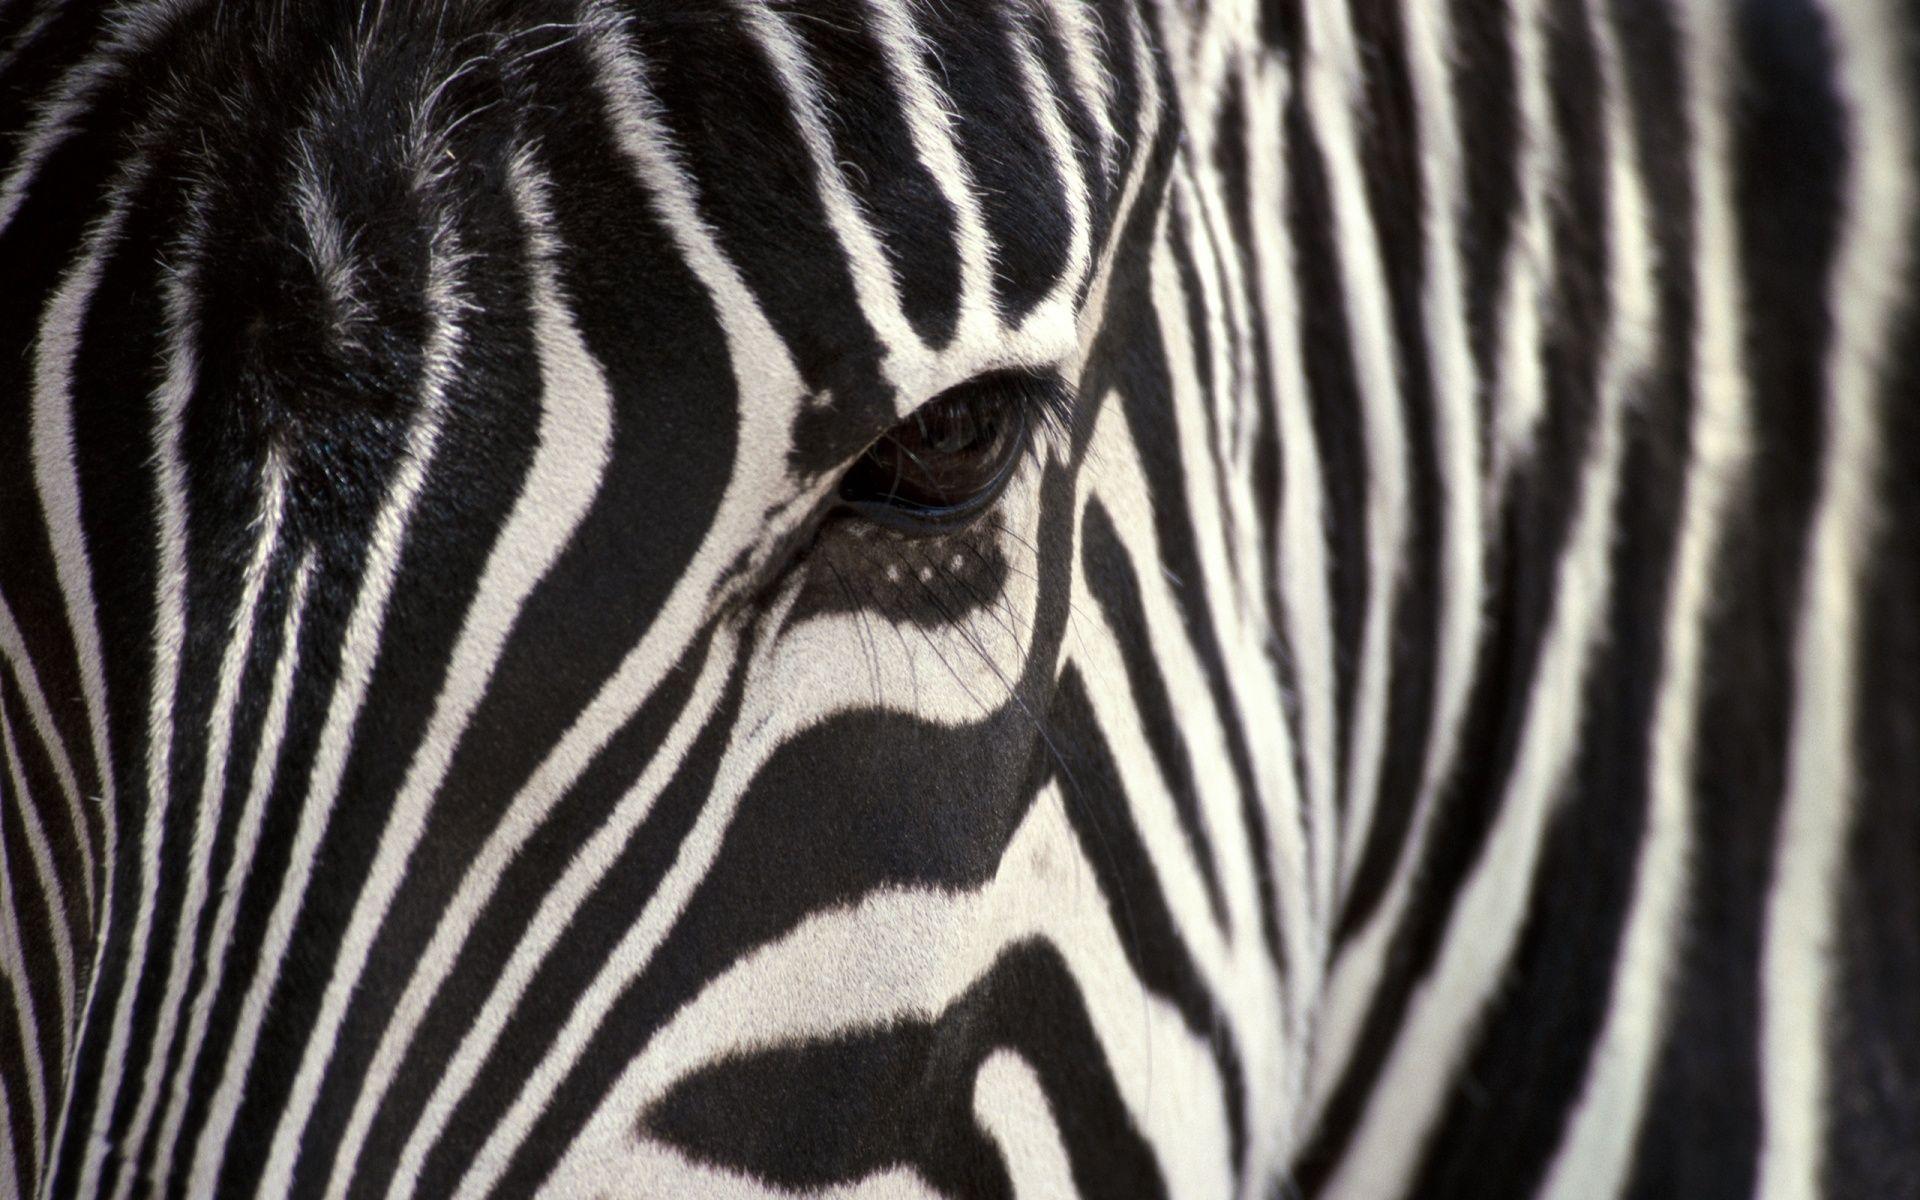 Zebra Desktop Wallpaper. Zebra Image Free